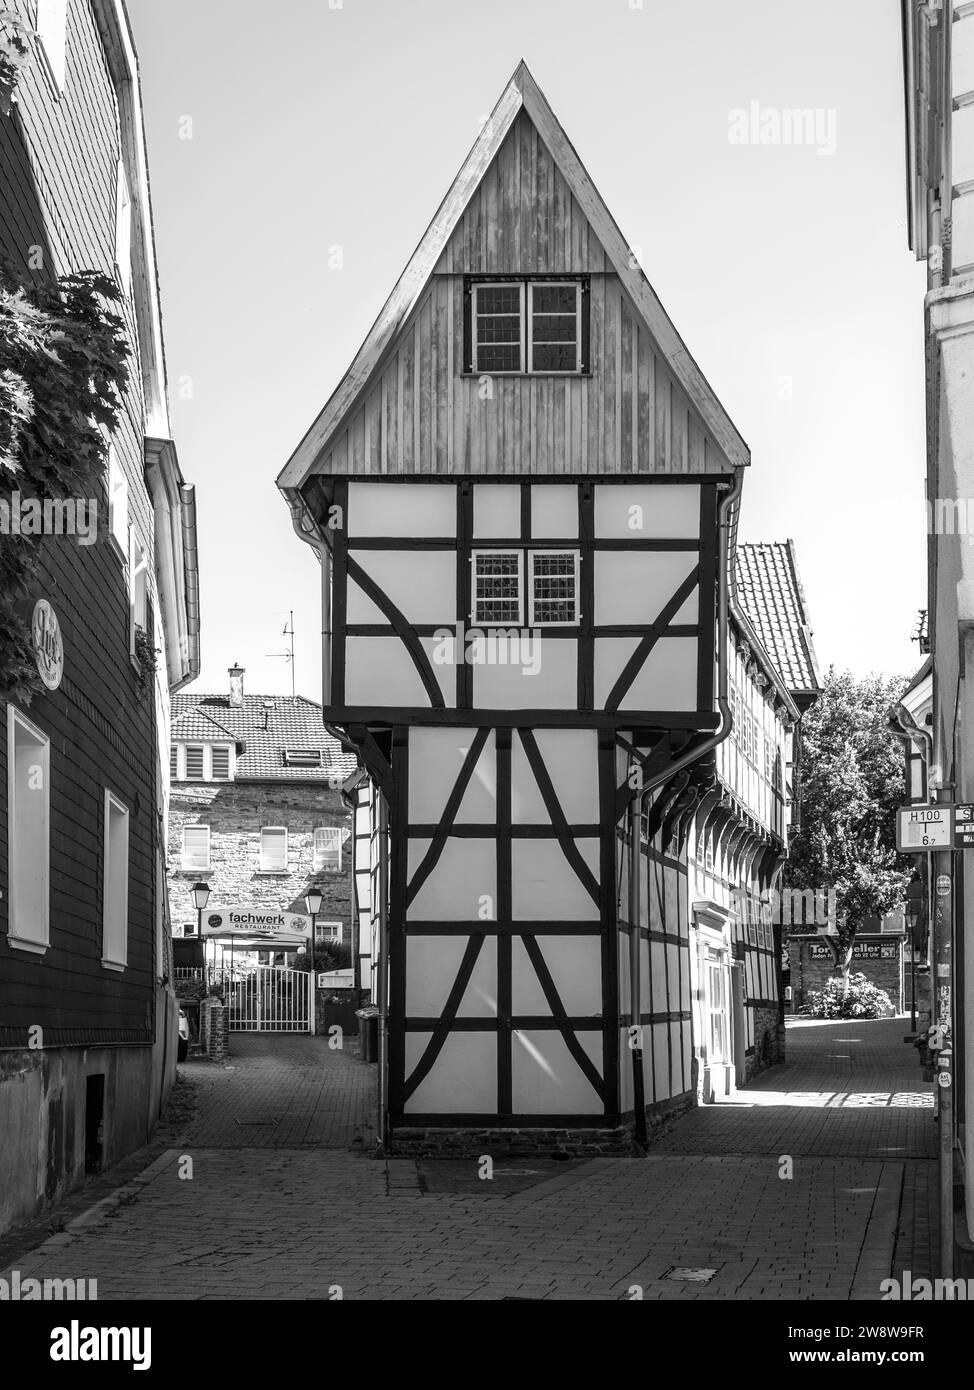 Hattingen, Allemagne - 7 août 2022 : la Maison de fer est une maison à colombages construite en 1611 dans la vieille ville de Hattingen (Altstadt), Rhénanie du Nord-Westphali Banque D'Images